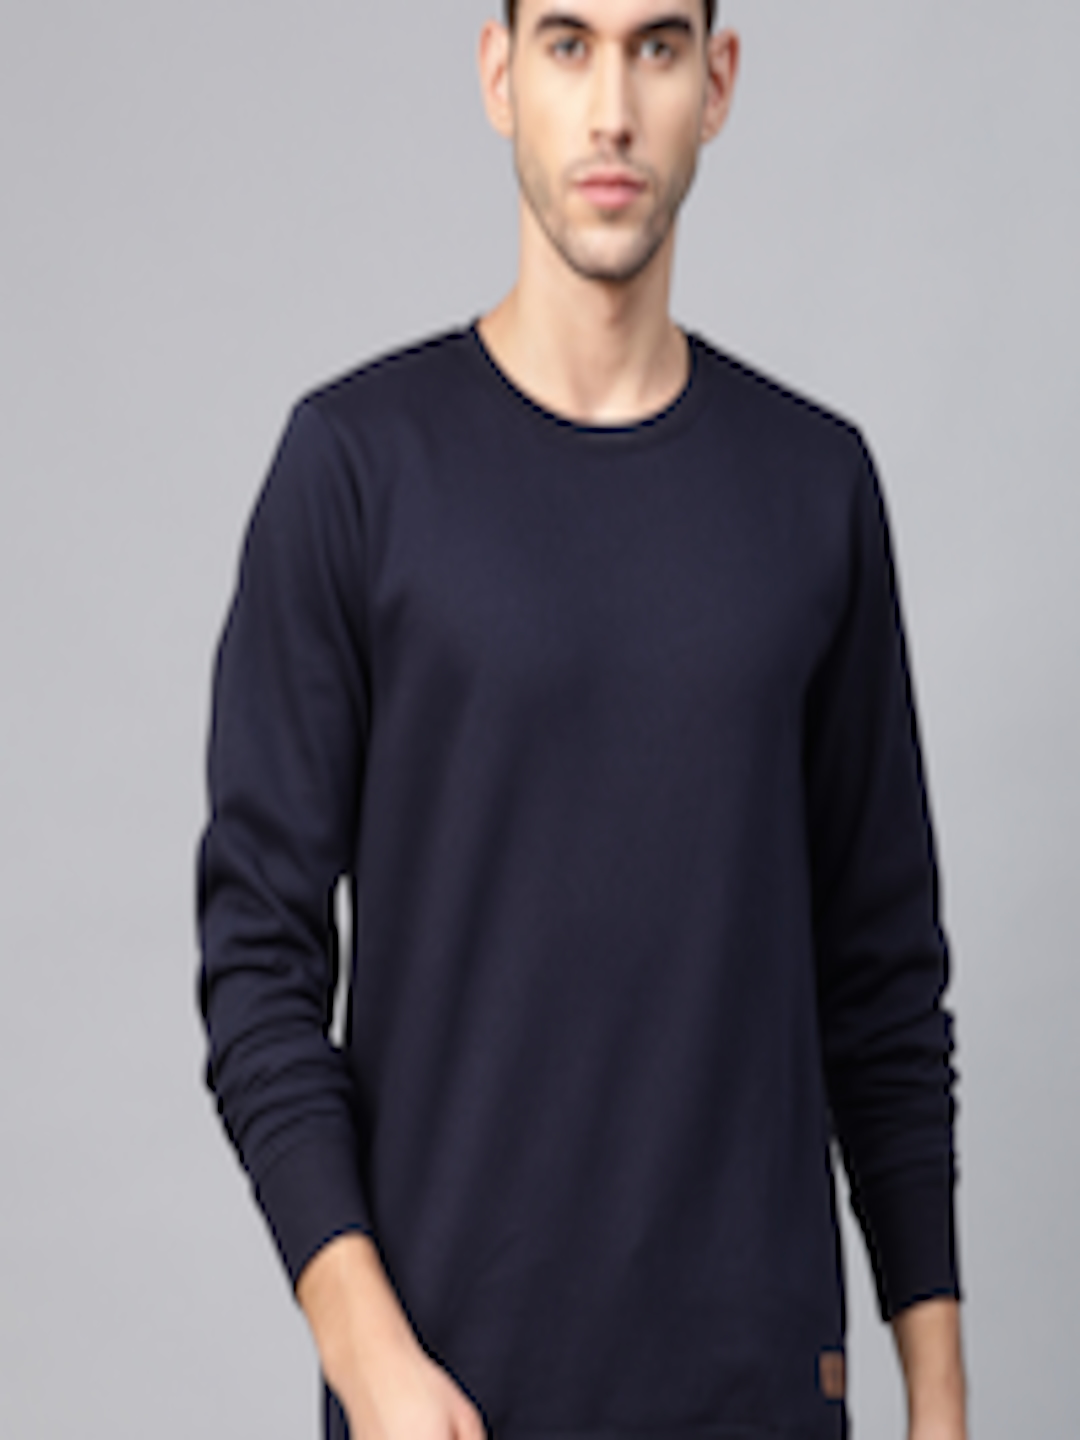 Buy Roadster Men Navy Blue Solid Sweatshirt - Sweatshirts for Men ...